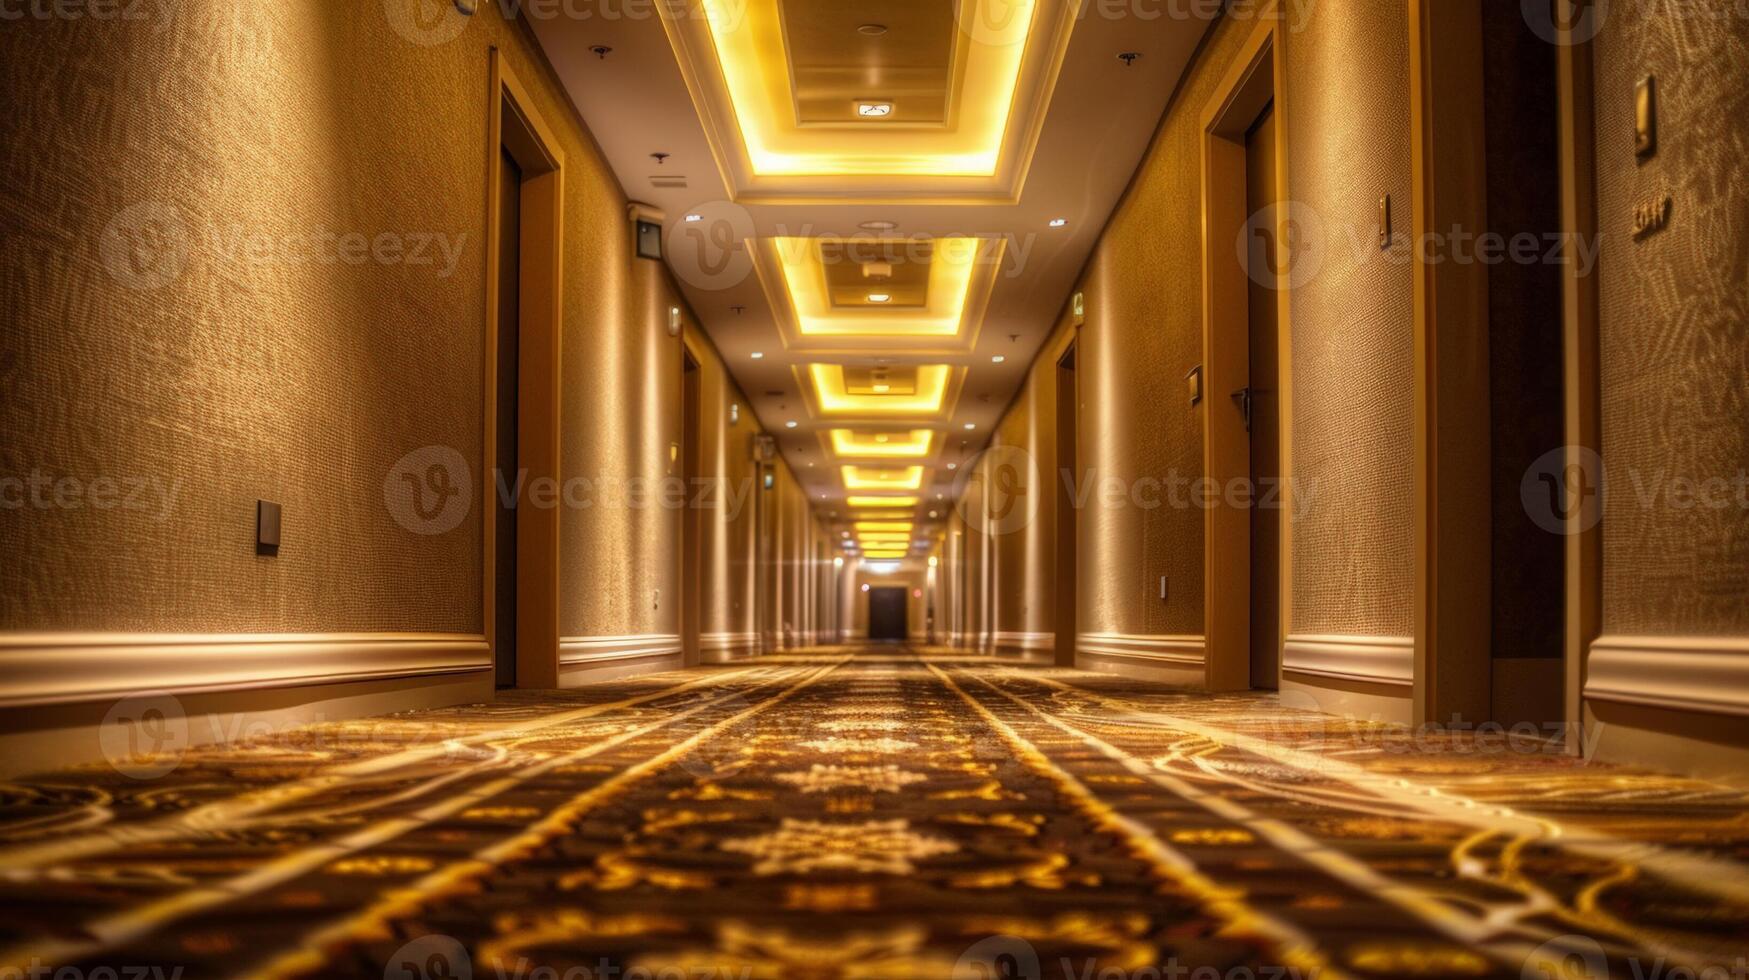 élégant Hôtel couloir avec chaud ambiant éclairage et luxueux tapis, idéal pour affaires voyage, hospitalité industrie thèmes, et haut de gamme hébergement réglages photo